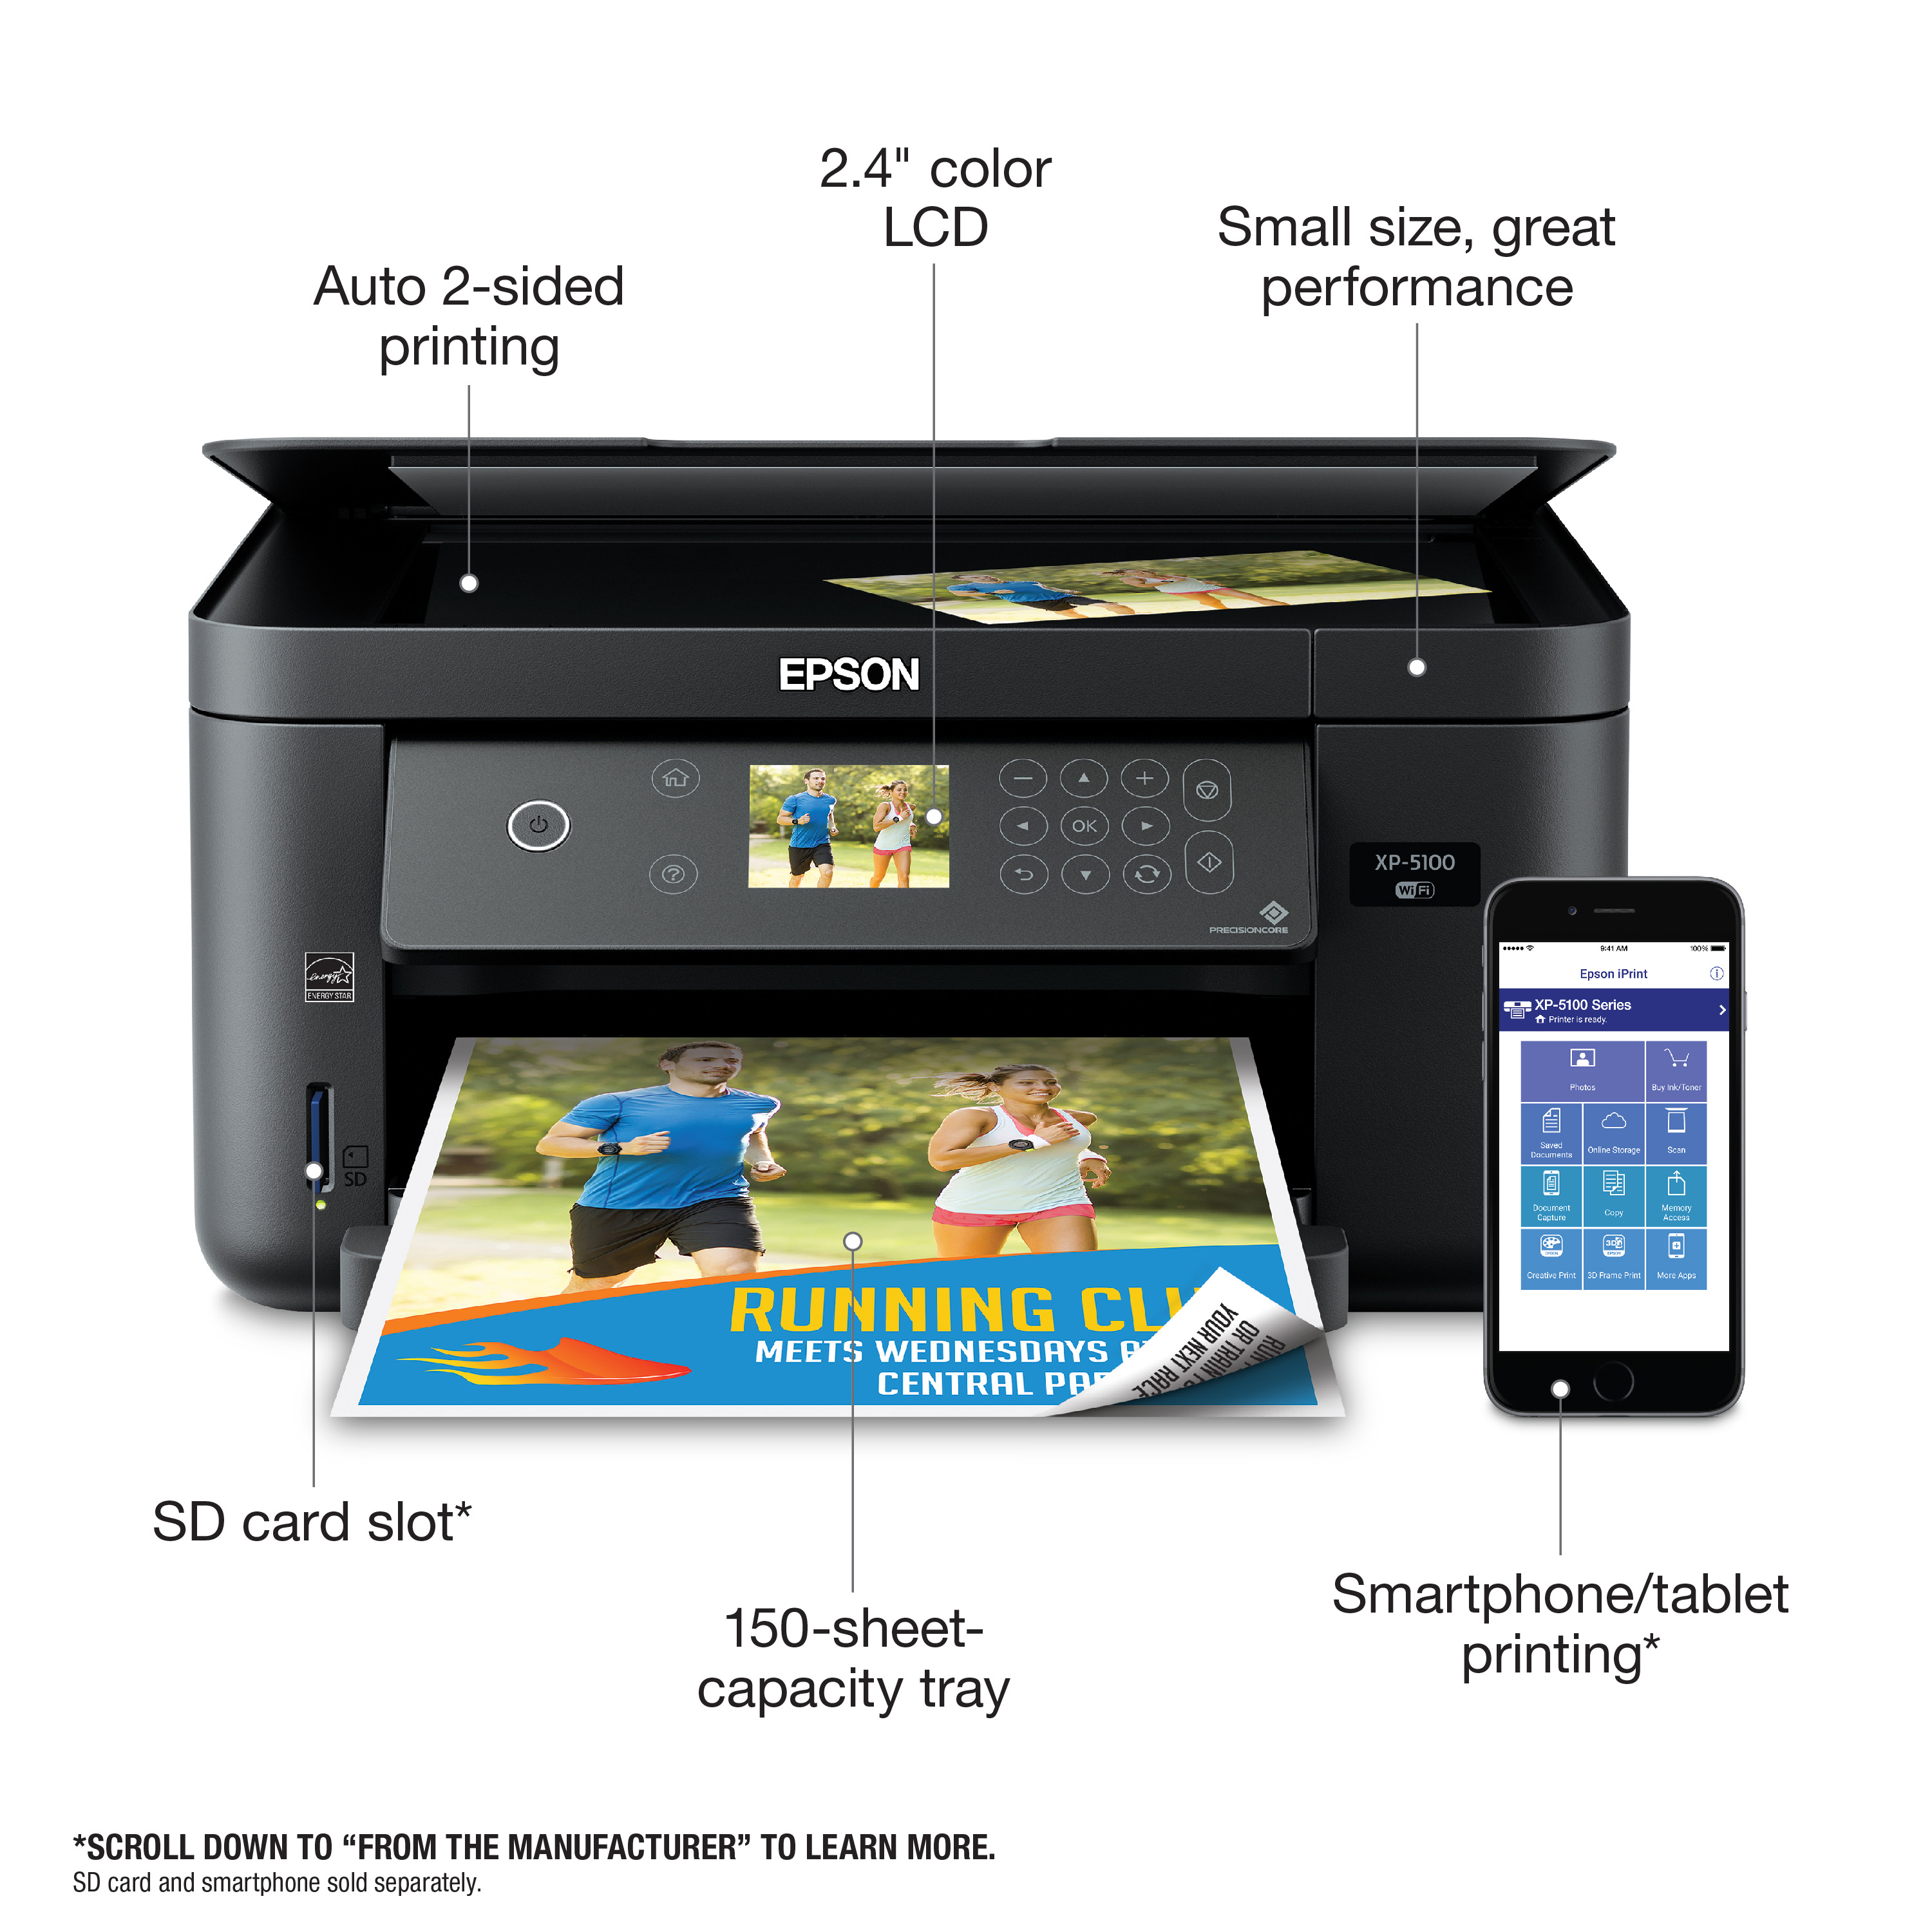 Impresora Epson XP-5100: Multifuncion impresora-copiadora-escaner, dúplex en impresión, Wifi, USB, Impresión móvil, Pantalla a color, bandeja posterior hasta 100 paginas, 33 pg/min Monocromo, 15 pg/min Color, nueva, SELLADA sin sistema